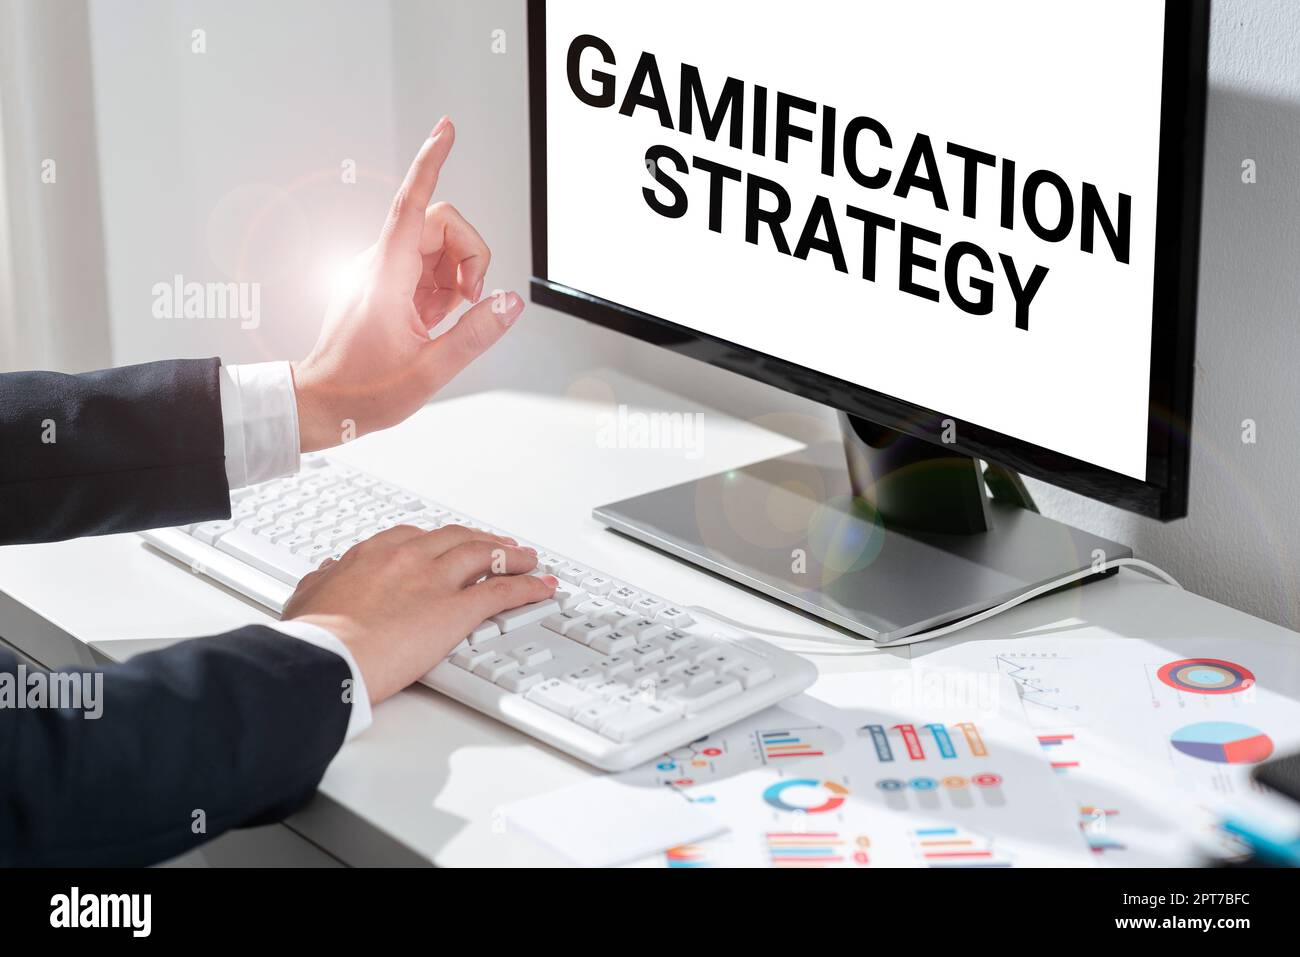 Stratégie de gamification d'affichage conceptuel, utilisation des idées d'affaires récompenses pour la motivation intégrer la mécanique de jeu Banque D'Images